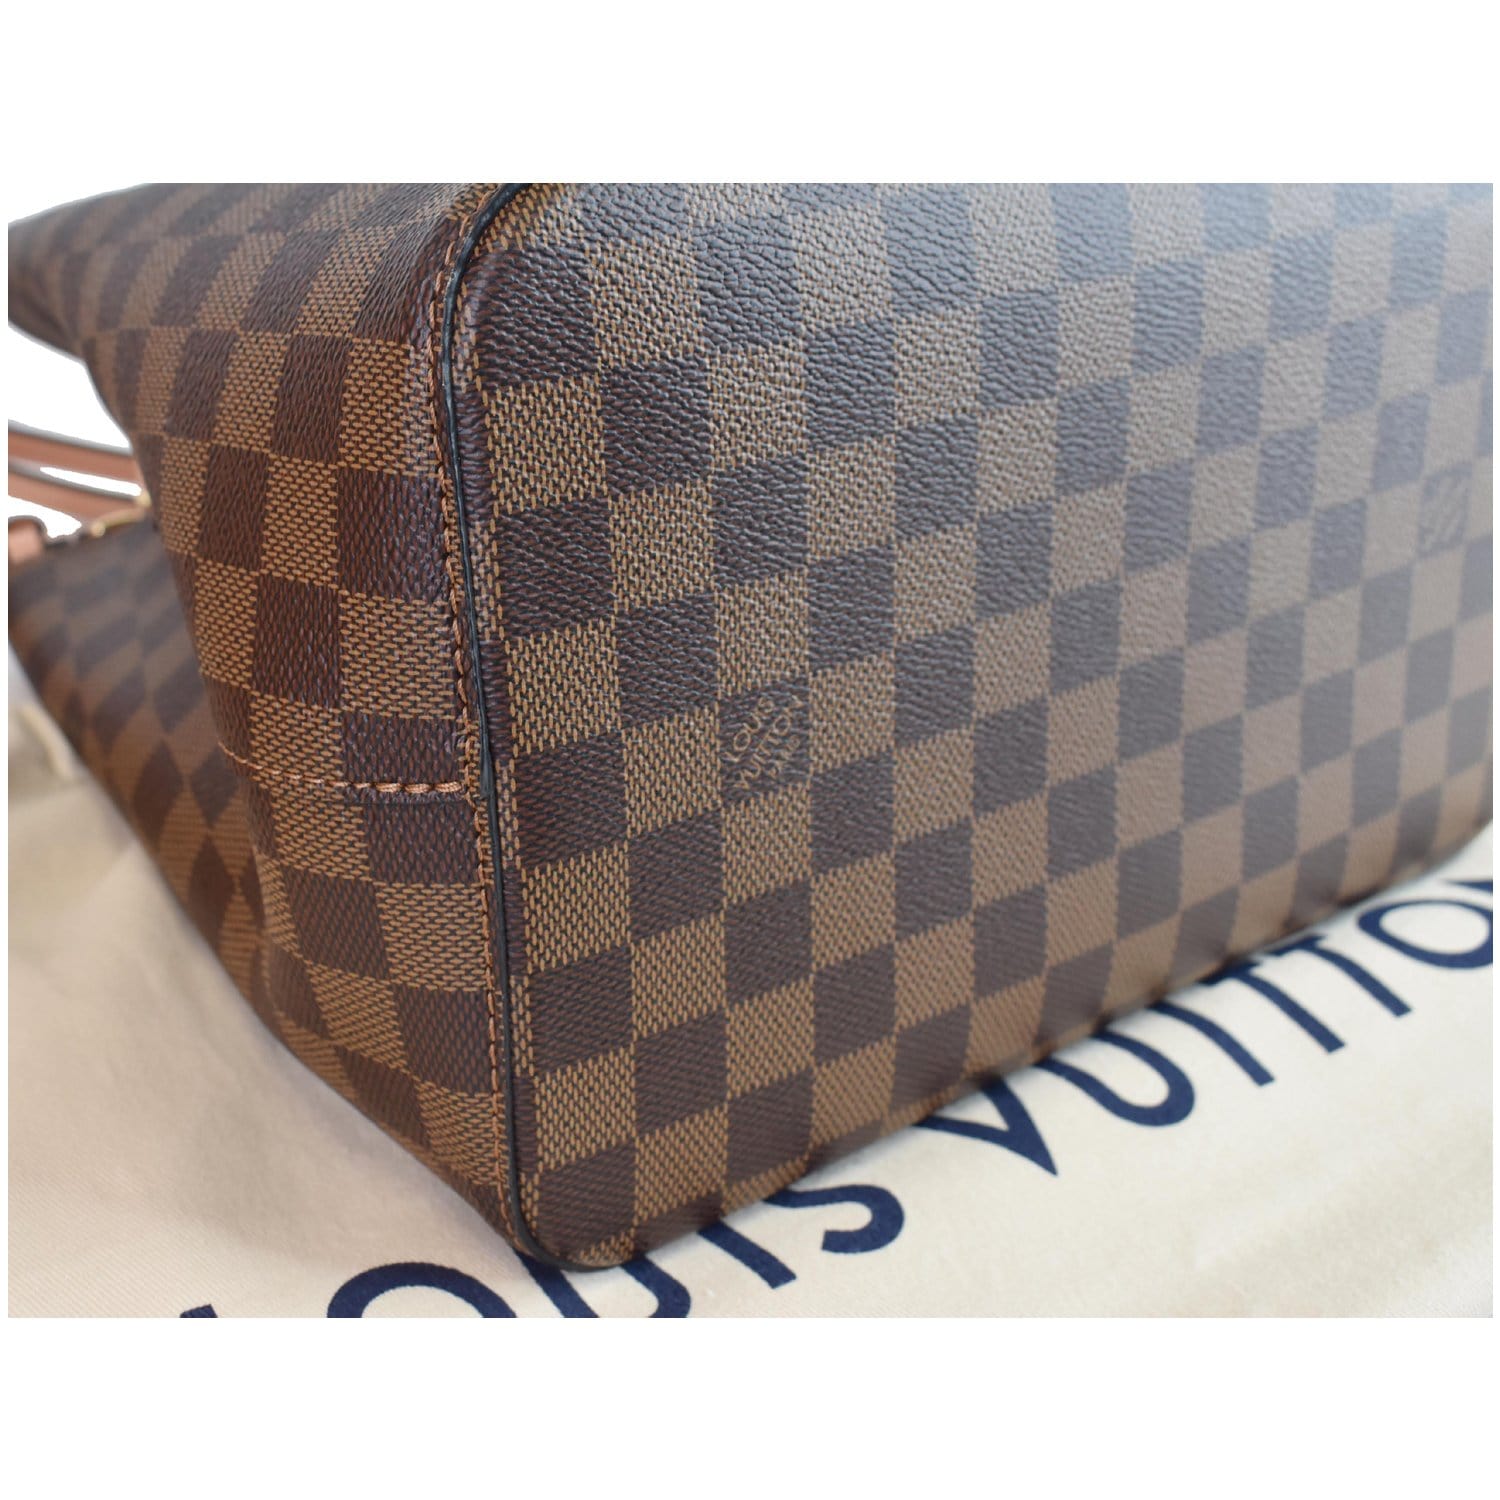 Louis Vuitton, Bags, Authentic Louis Vuitton Damier Ebene Neonoe